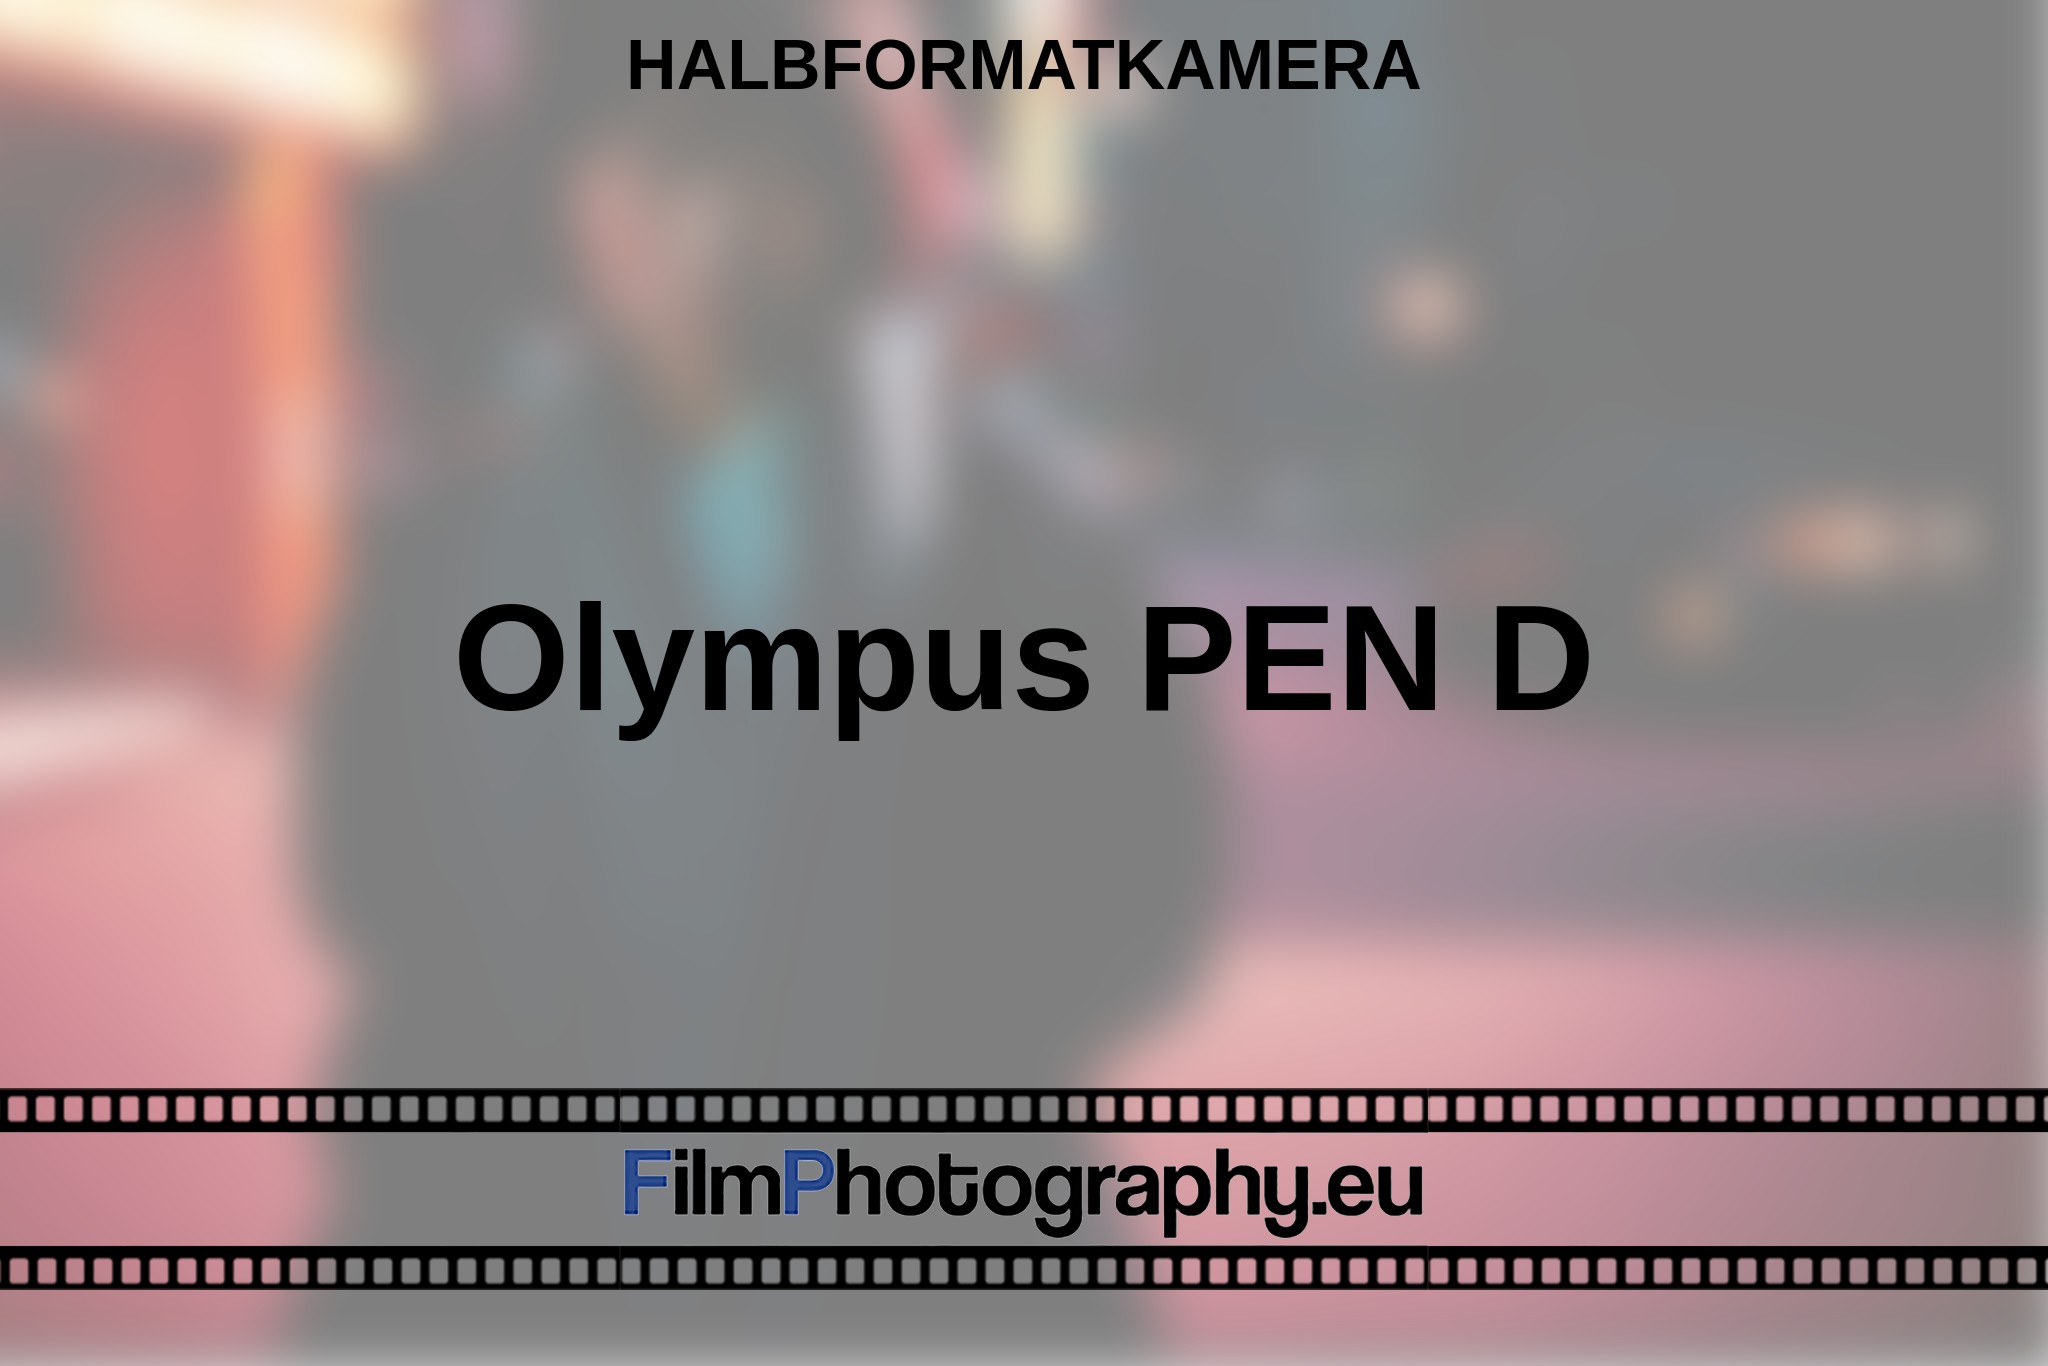 olympus-pen-d-halbformatkamera-bnv.jpg